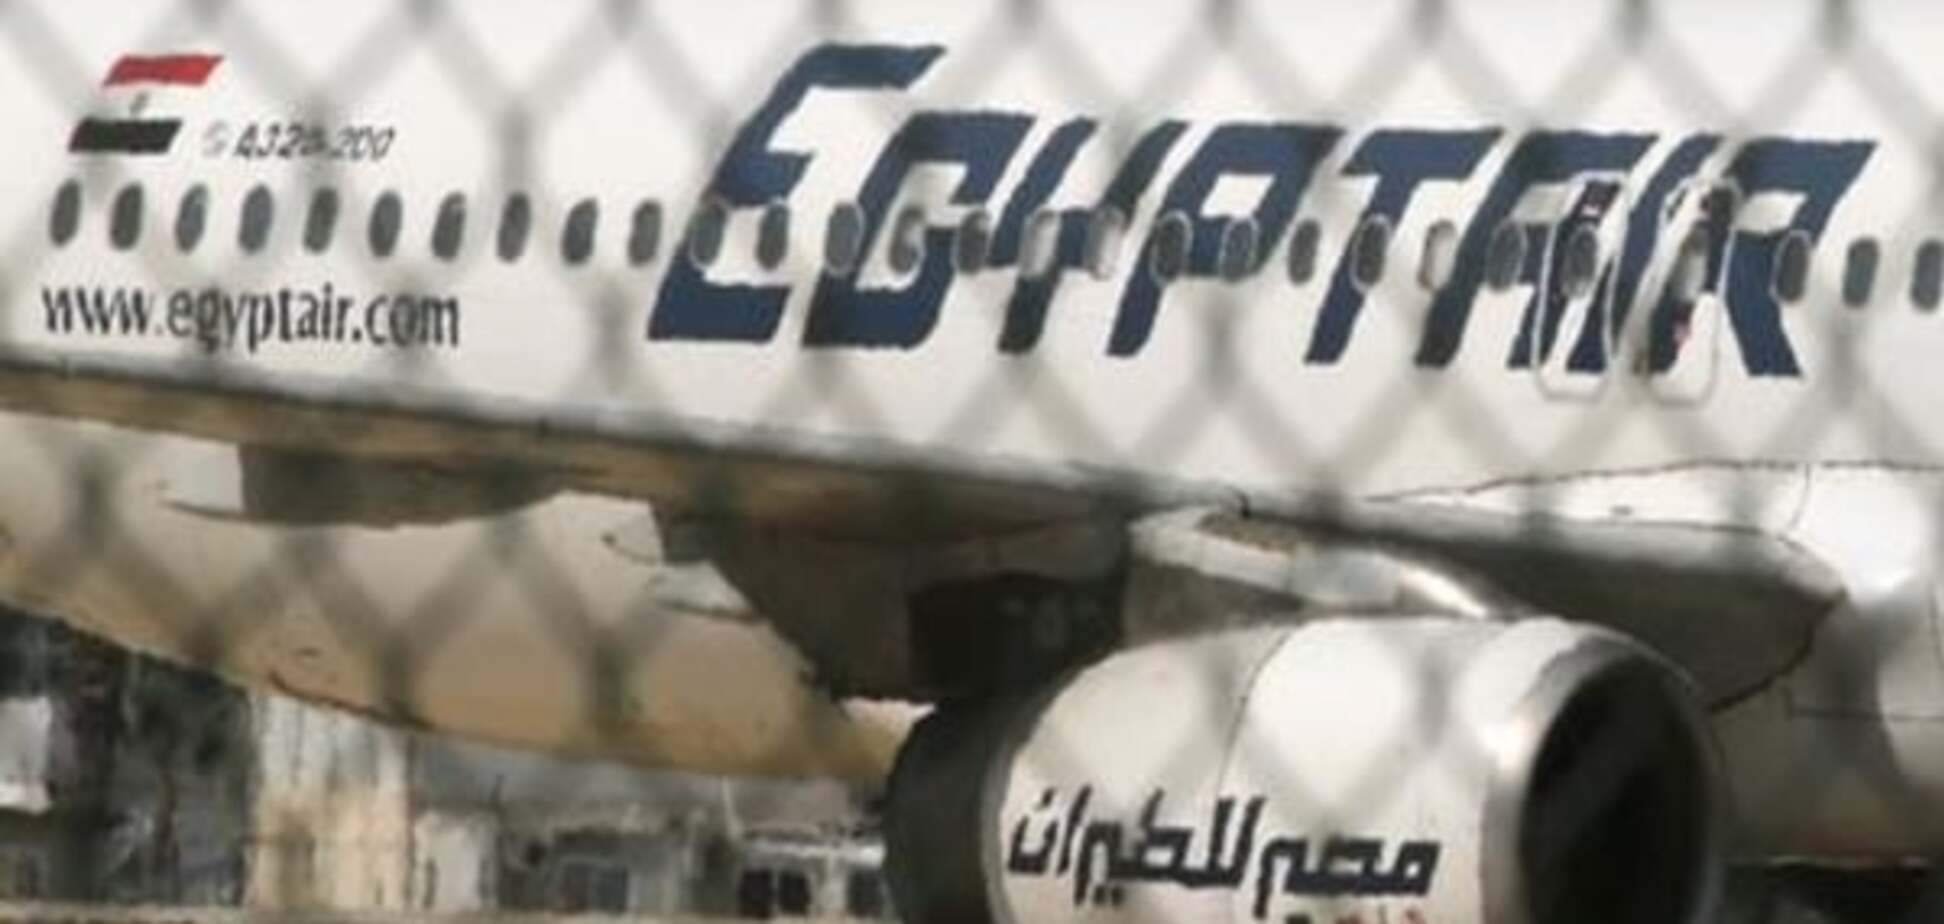 +++ Літак EgyptAir зник з радарів над Середземним морем +++